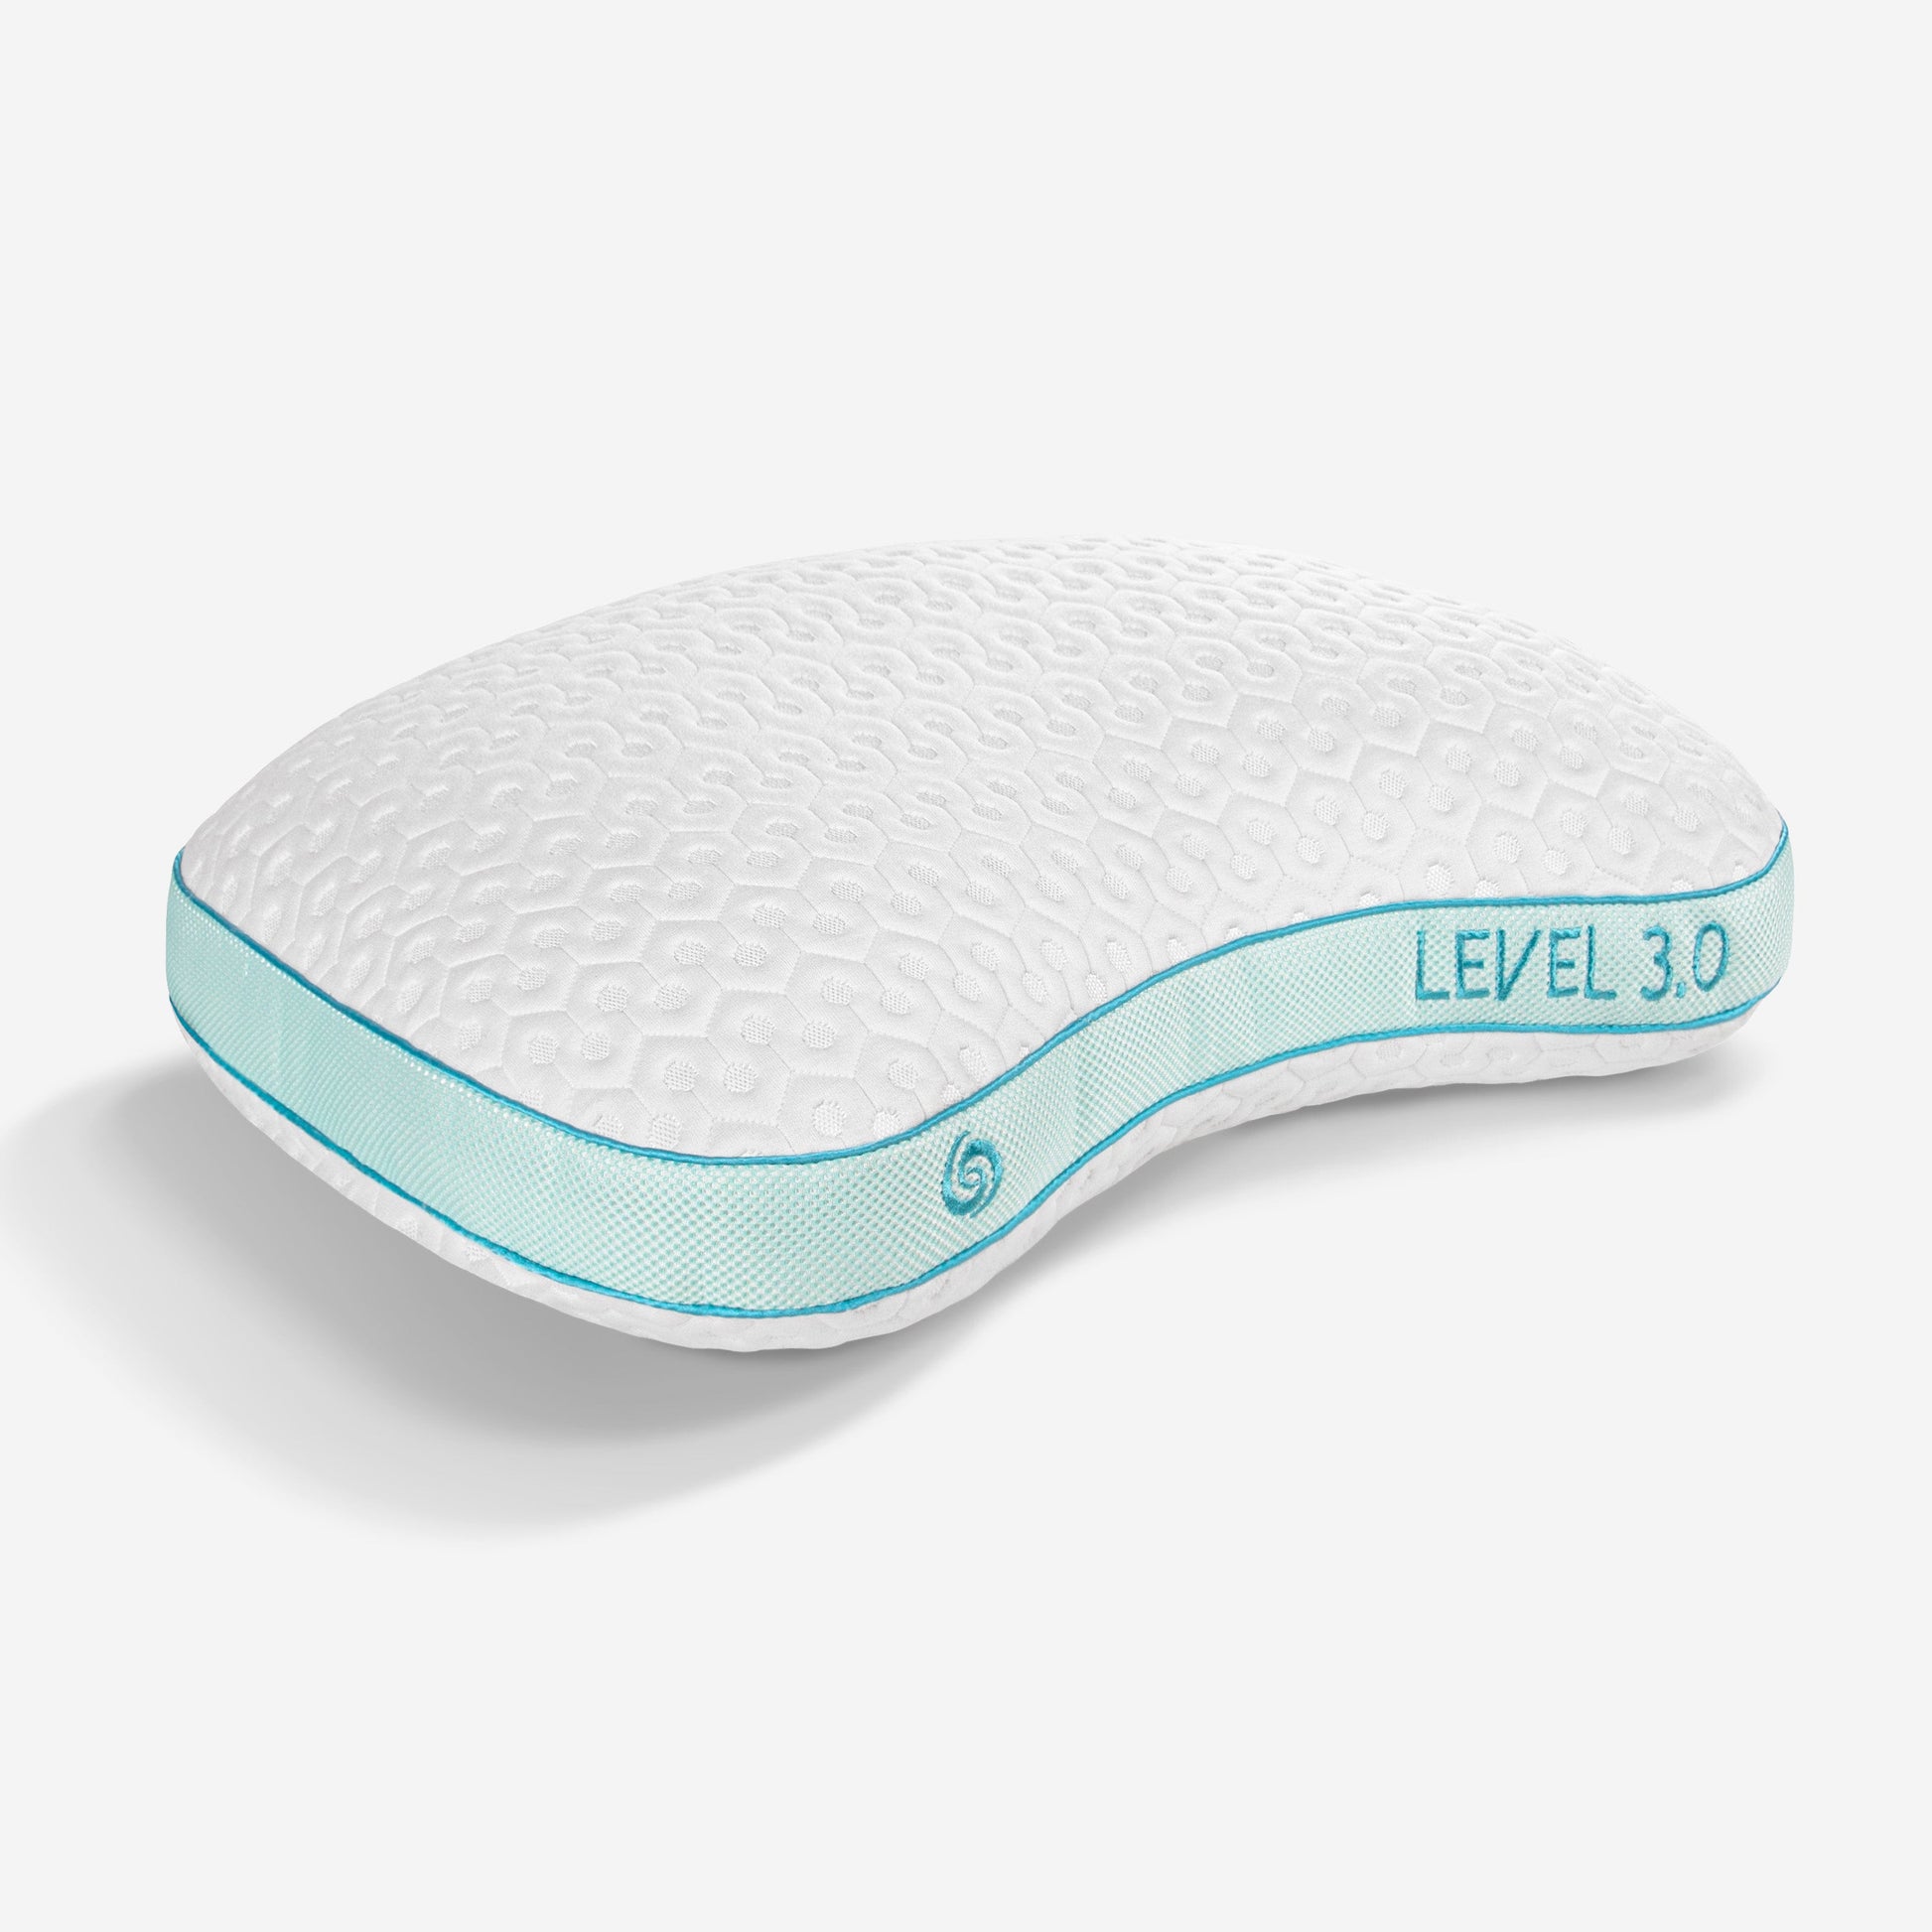 Bedgear Level Performance Pillow 3.0